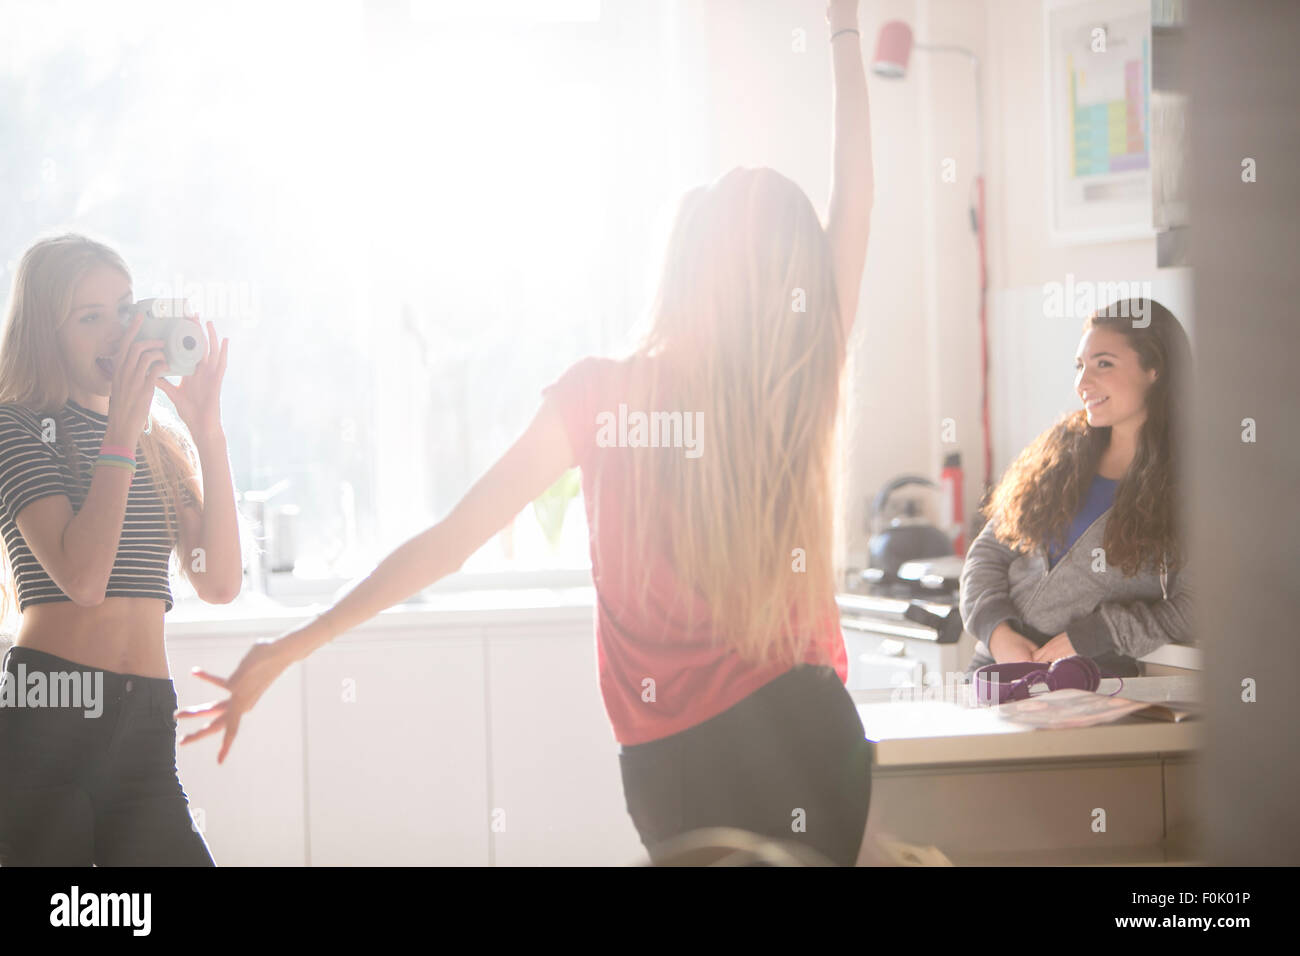 Le ragazze adolescenti dancing e fotografare in cucina Foto Stock